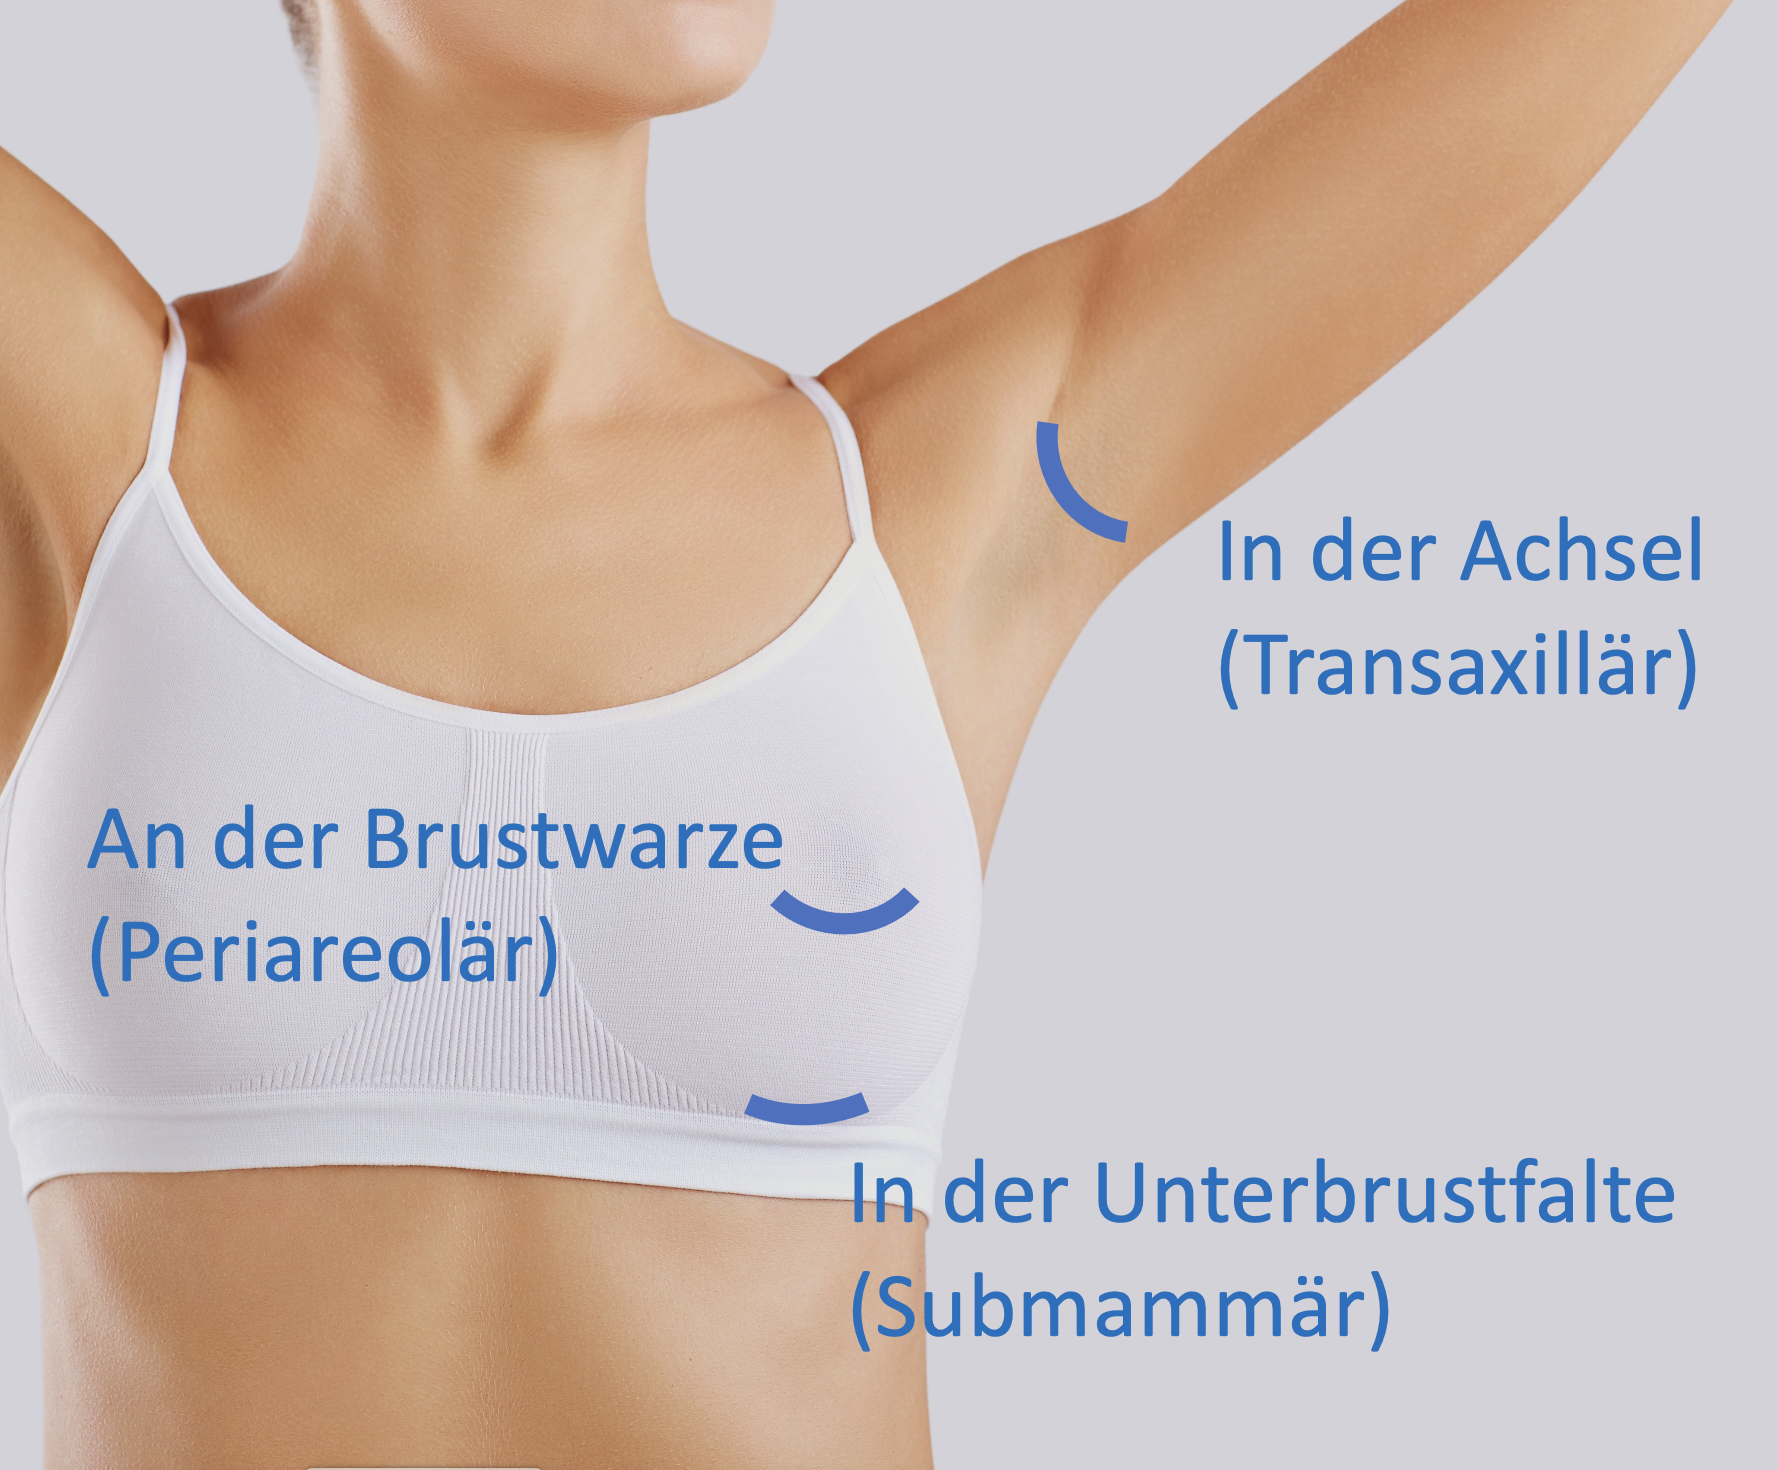 Zugangswege zur Brustvergrößerung